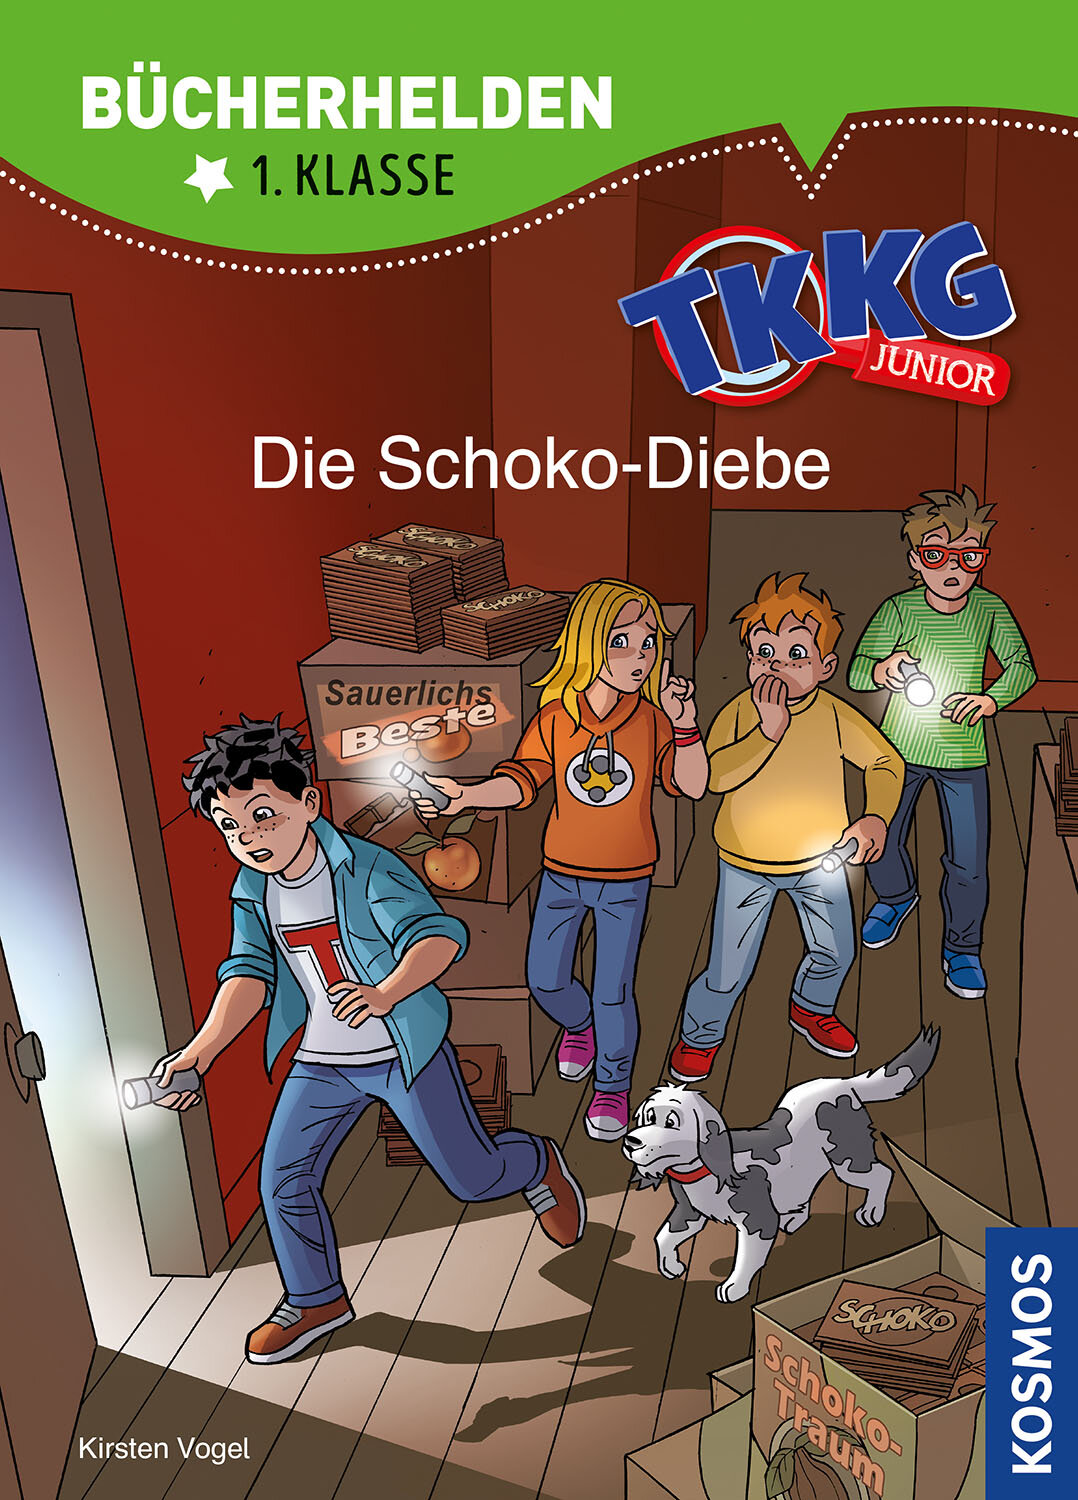 TKKG Junior  Bücherhelden 1. Klasse  Die Schoko-Diebe